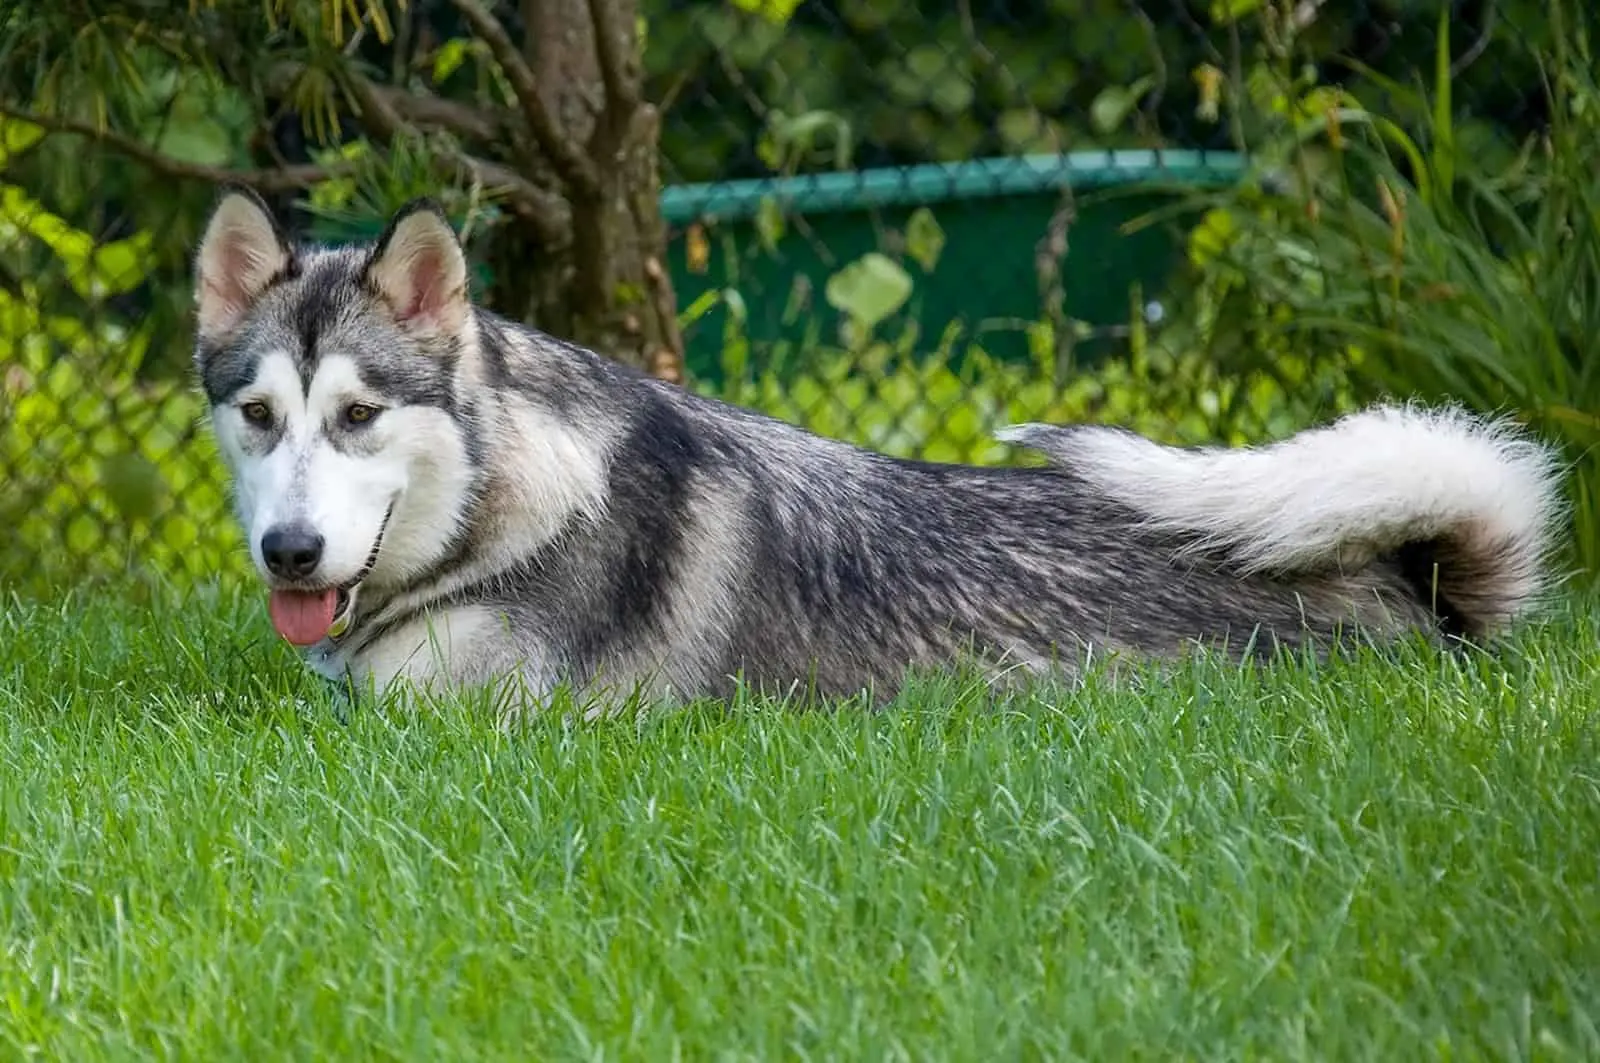 kugsha dog lying on the grass